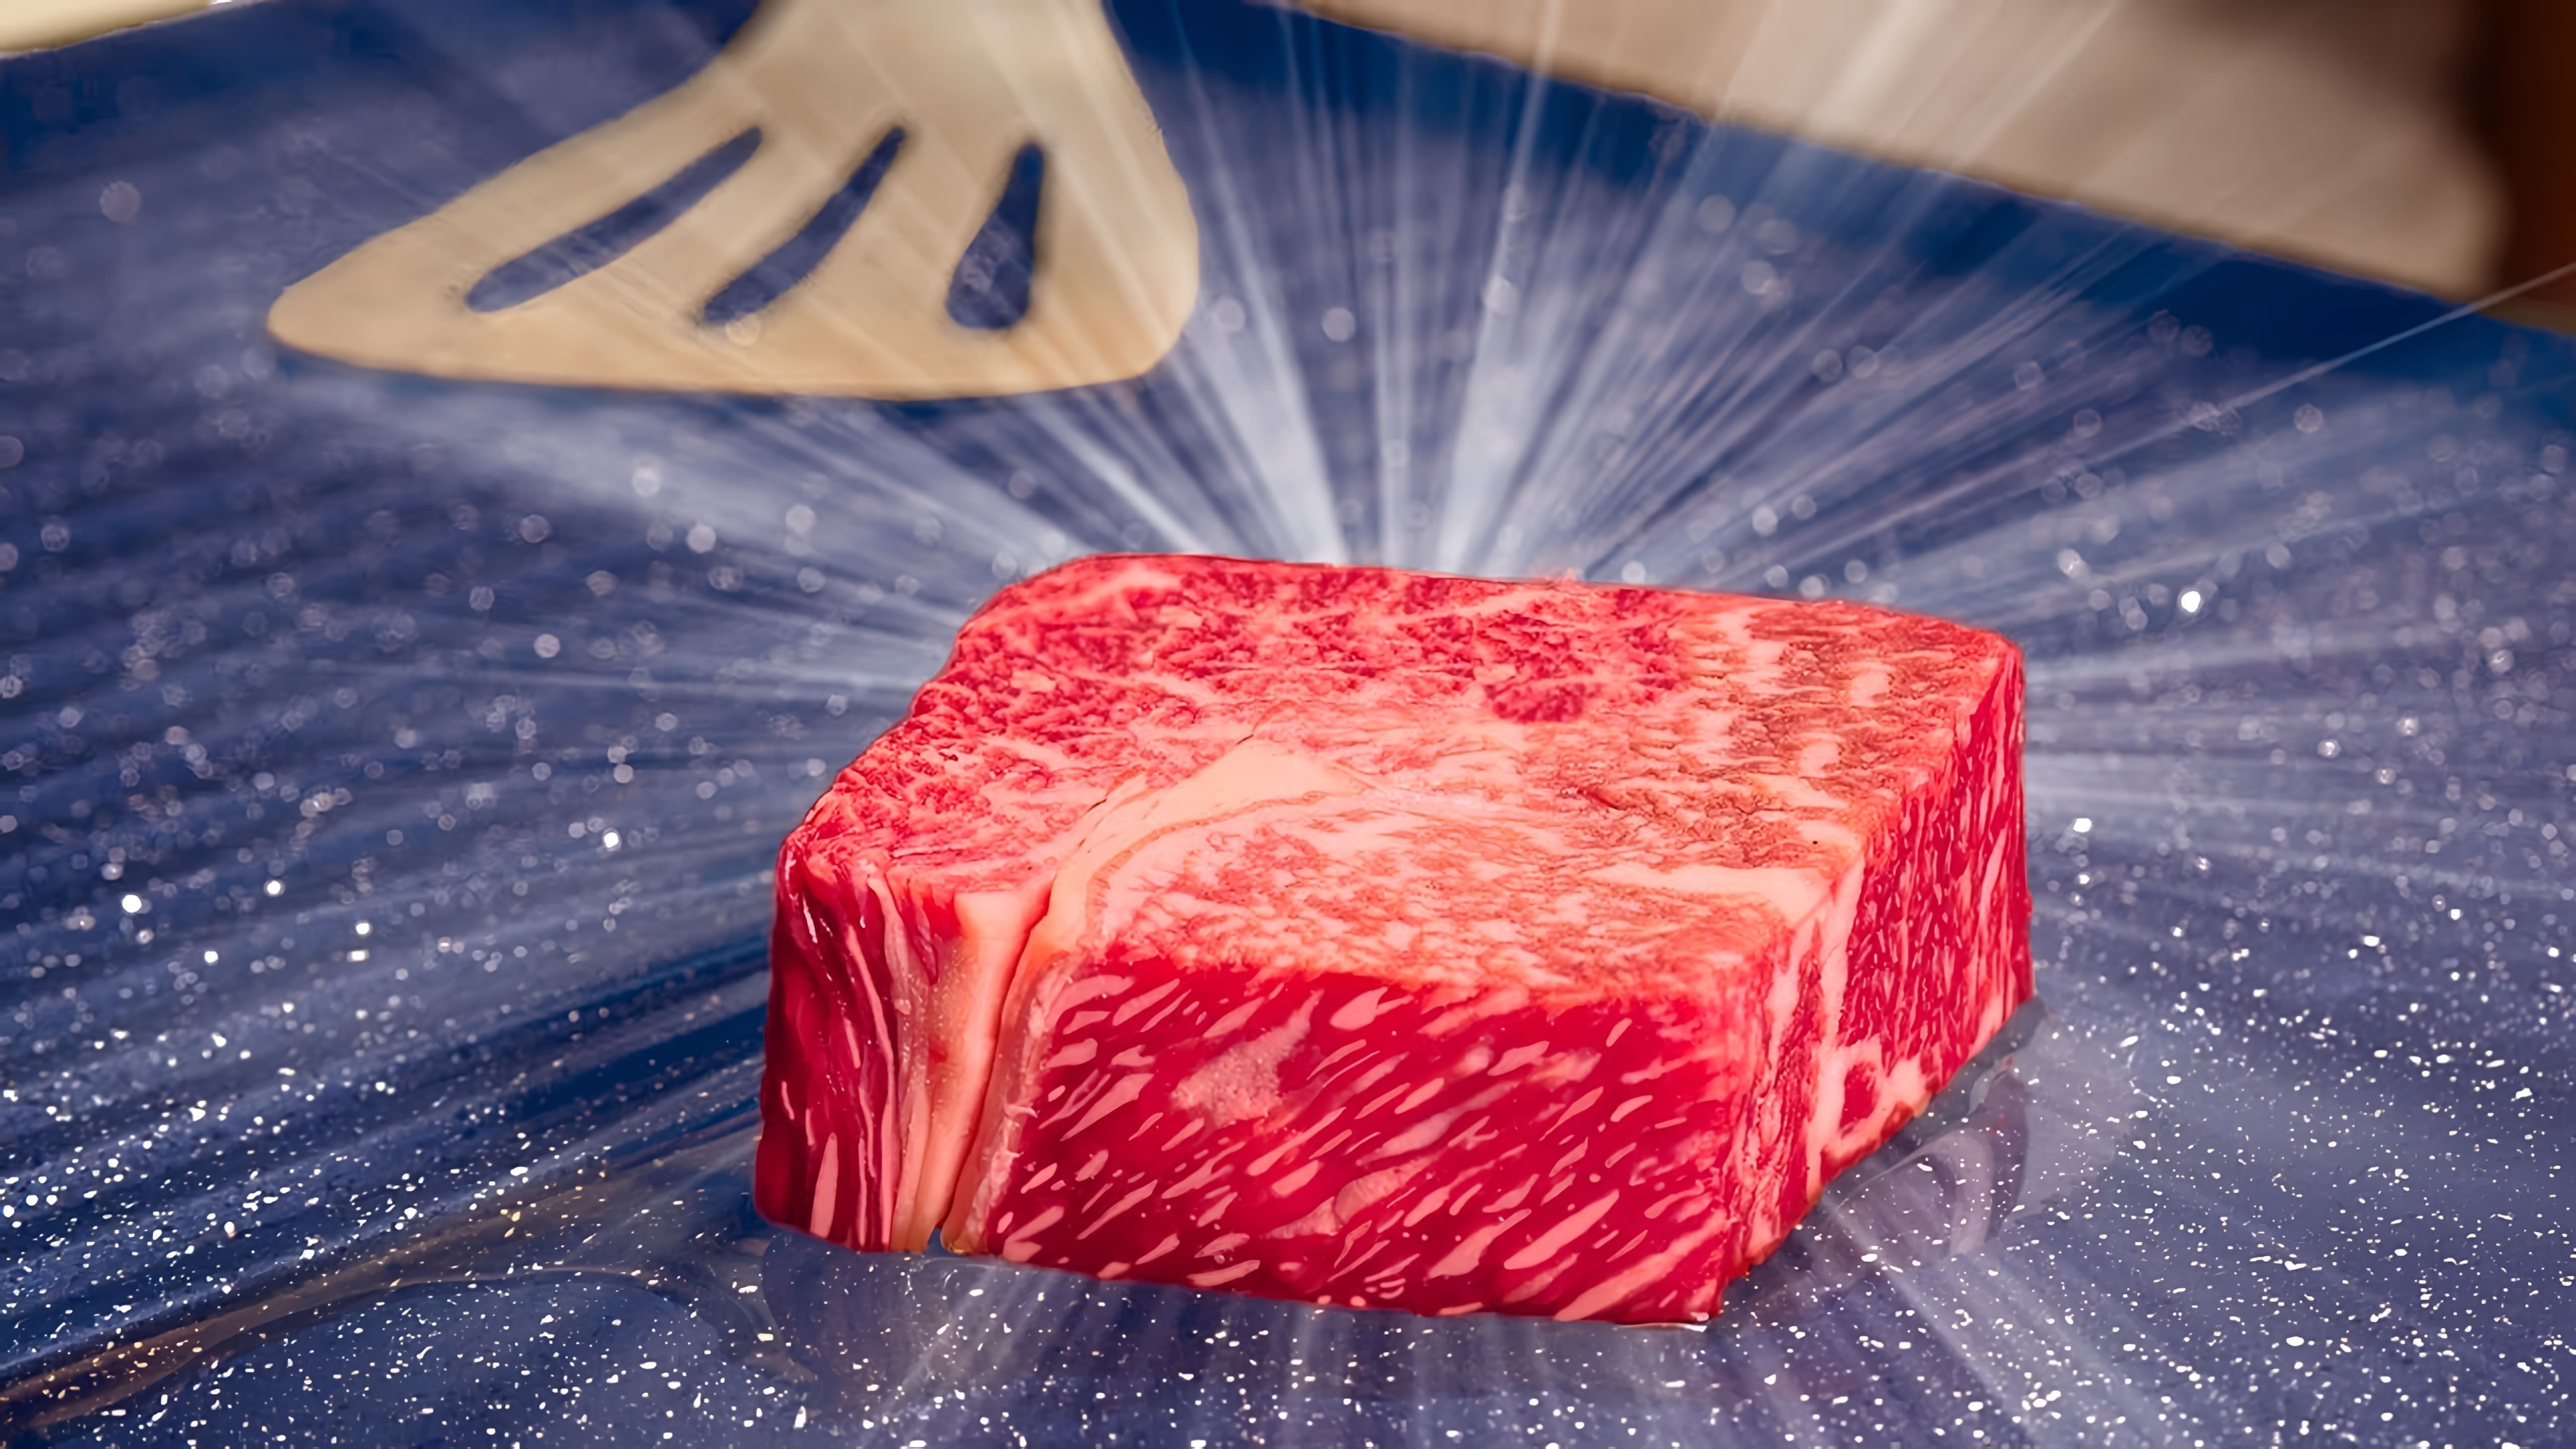 В этом видео мы сравниваем три вида стейков: обычную говядину, мраморную говядину и стейк вагу